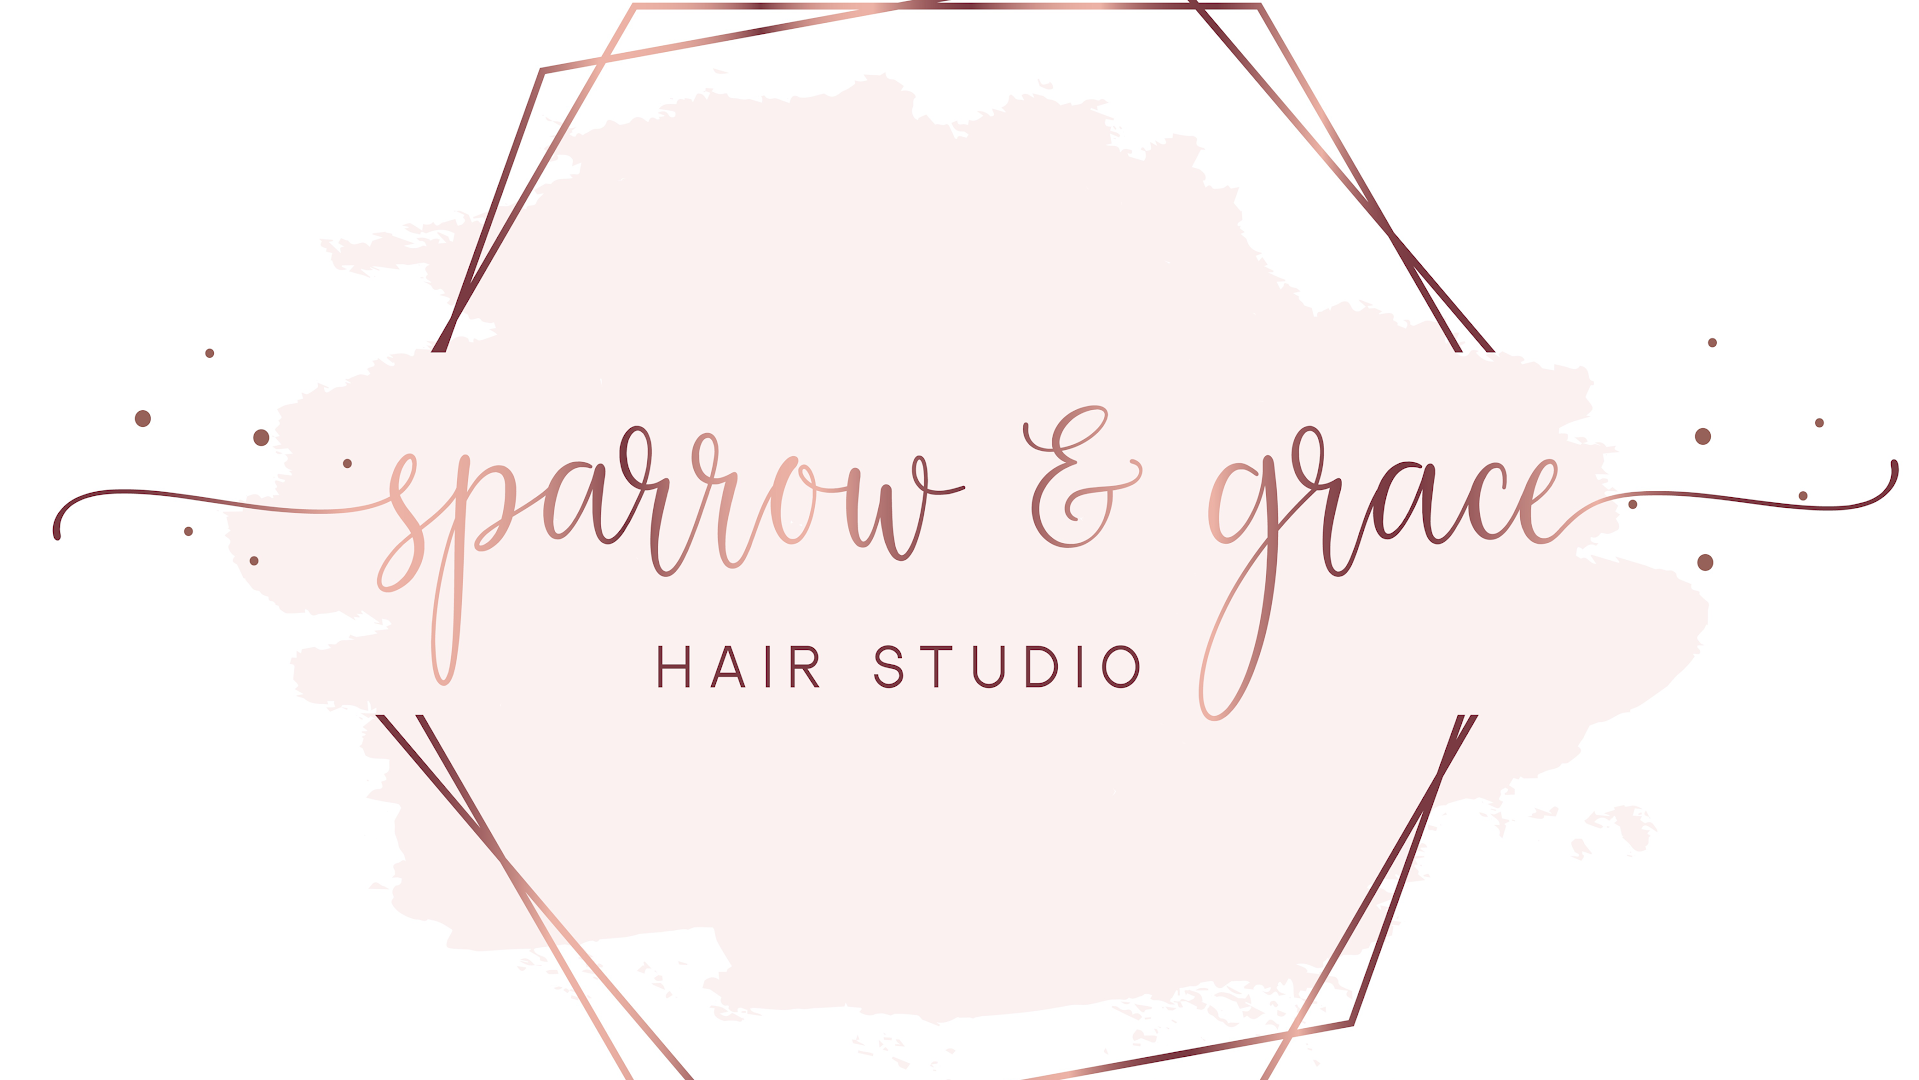 Sparrow & Grace Hair Studio